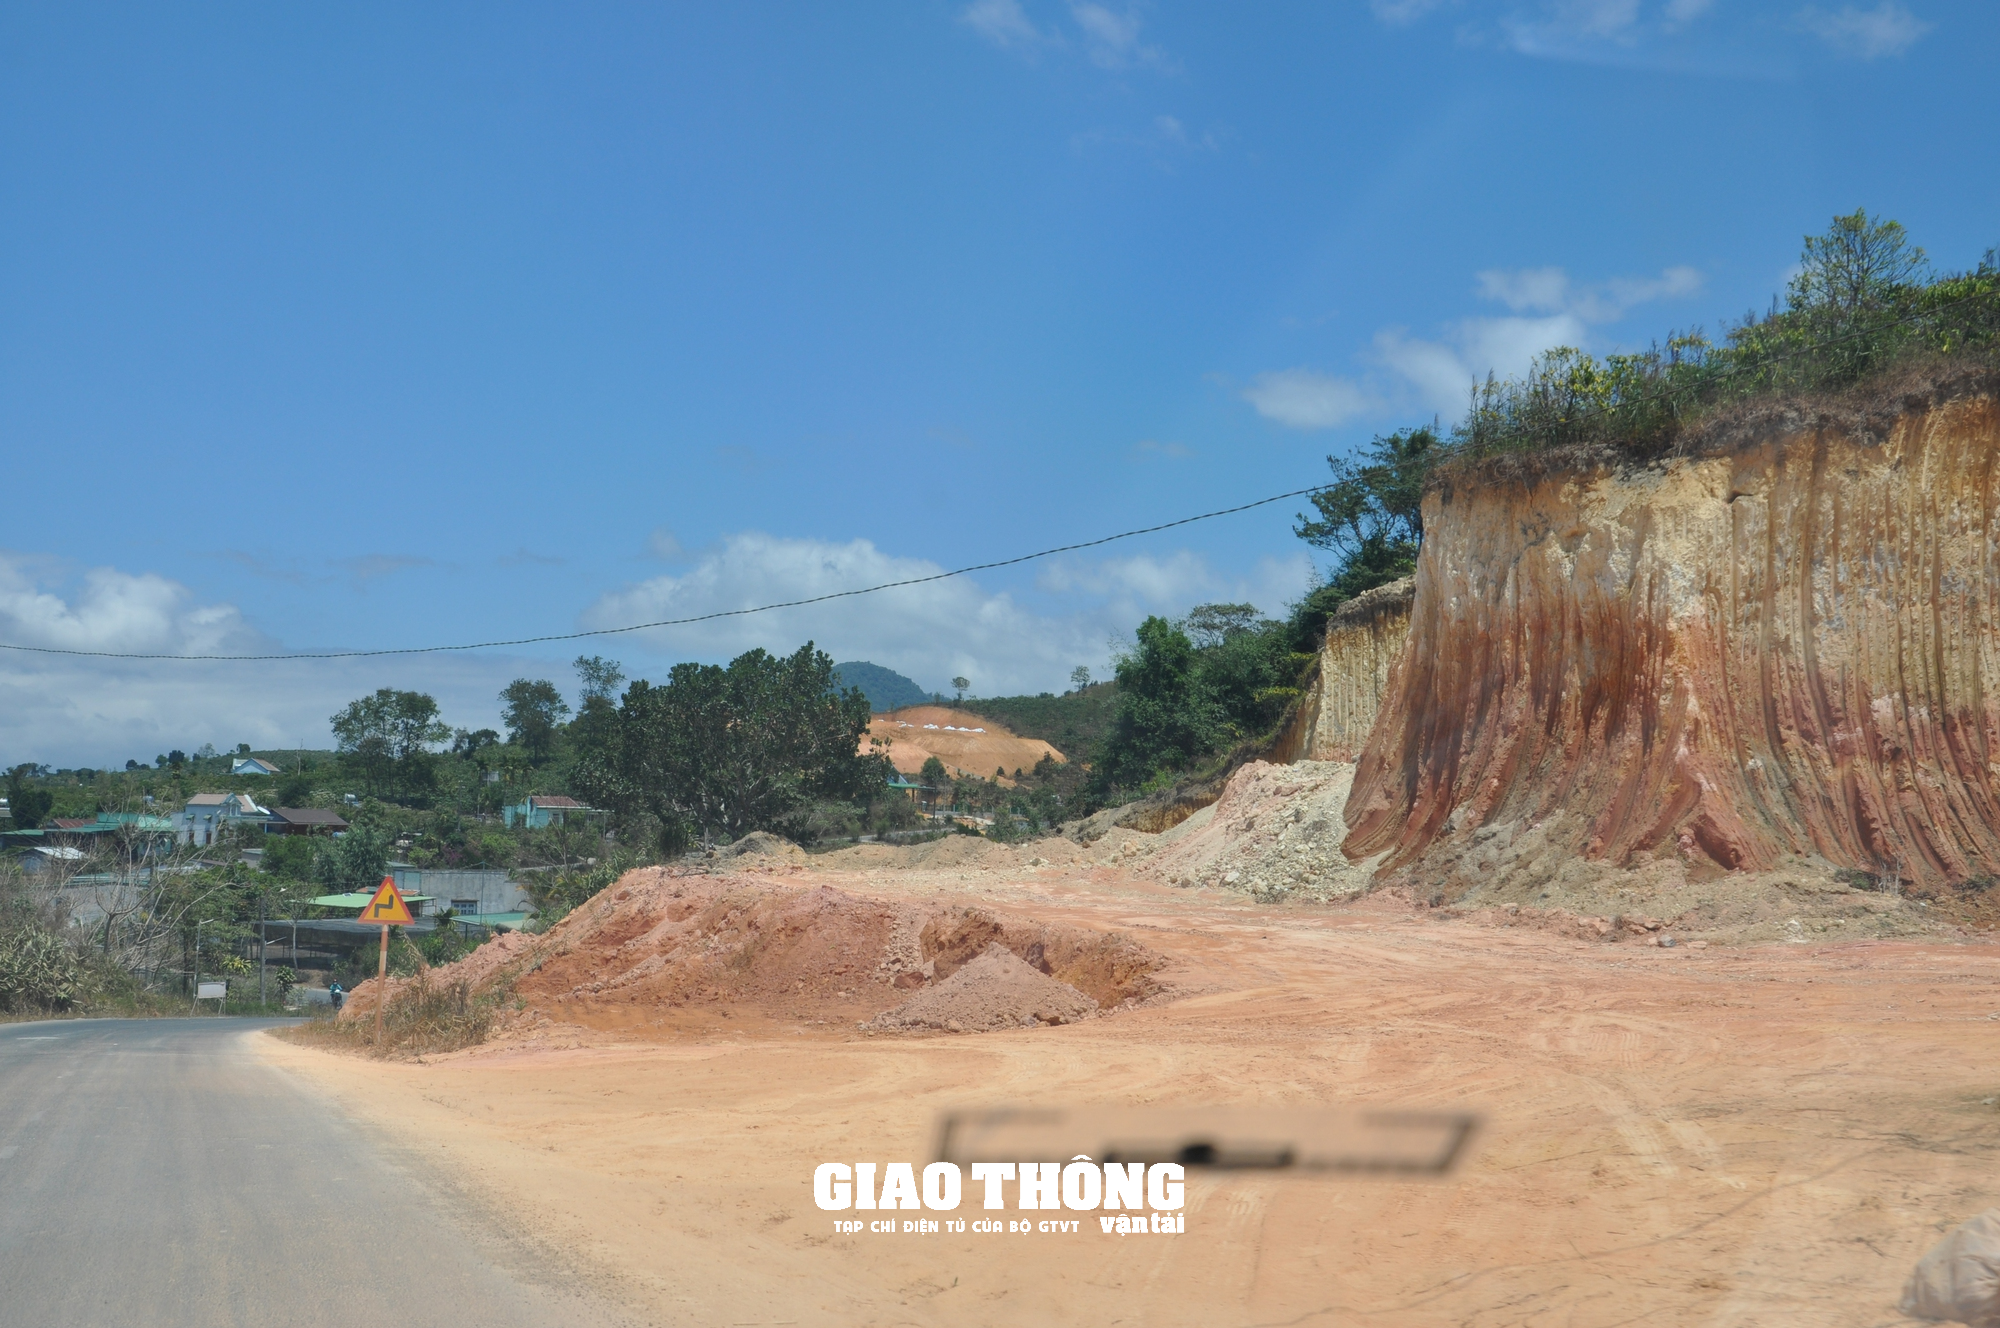 Nhức nhối nạn đào, san lấp mặt bằng xâm phạm hành lang tuyến QL27, ĐT724 ở Lâm Đồng - Ảnh 12.